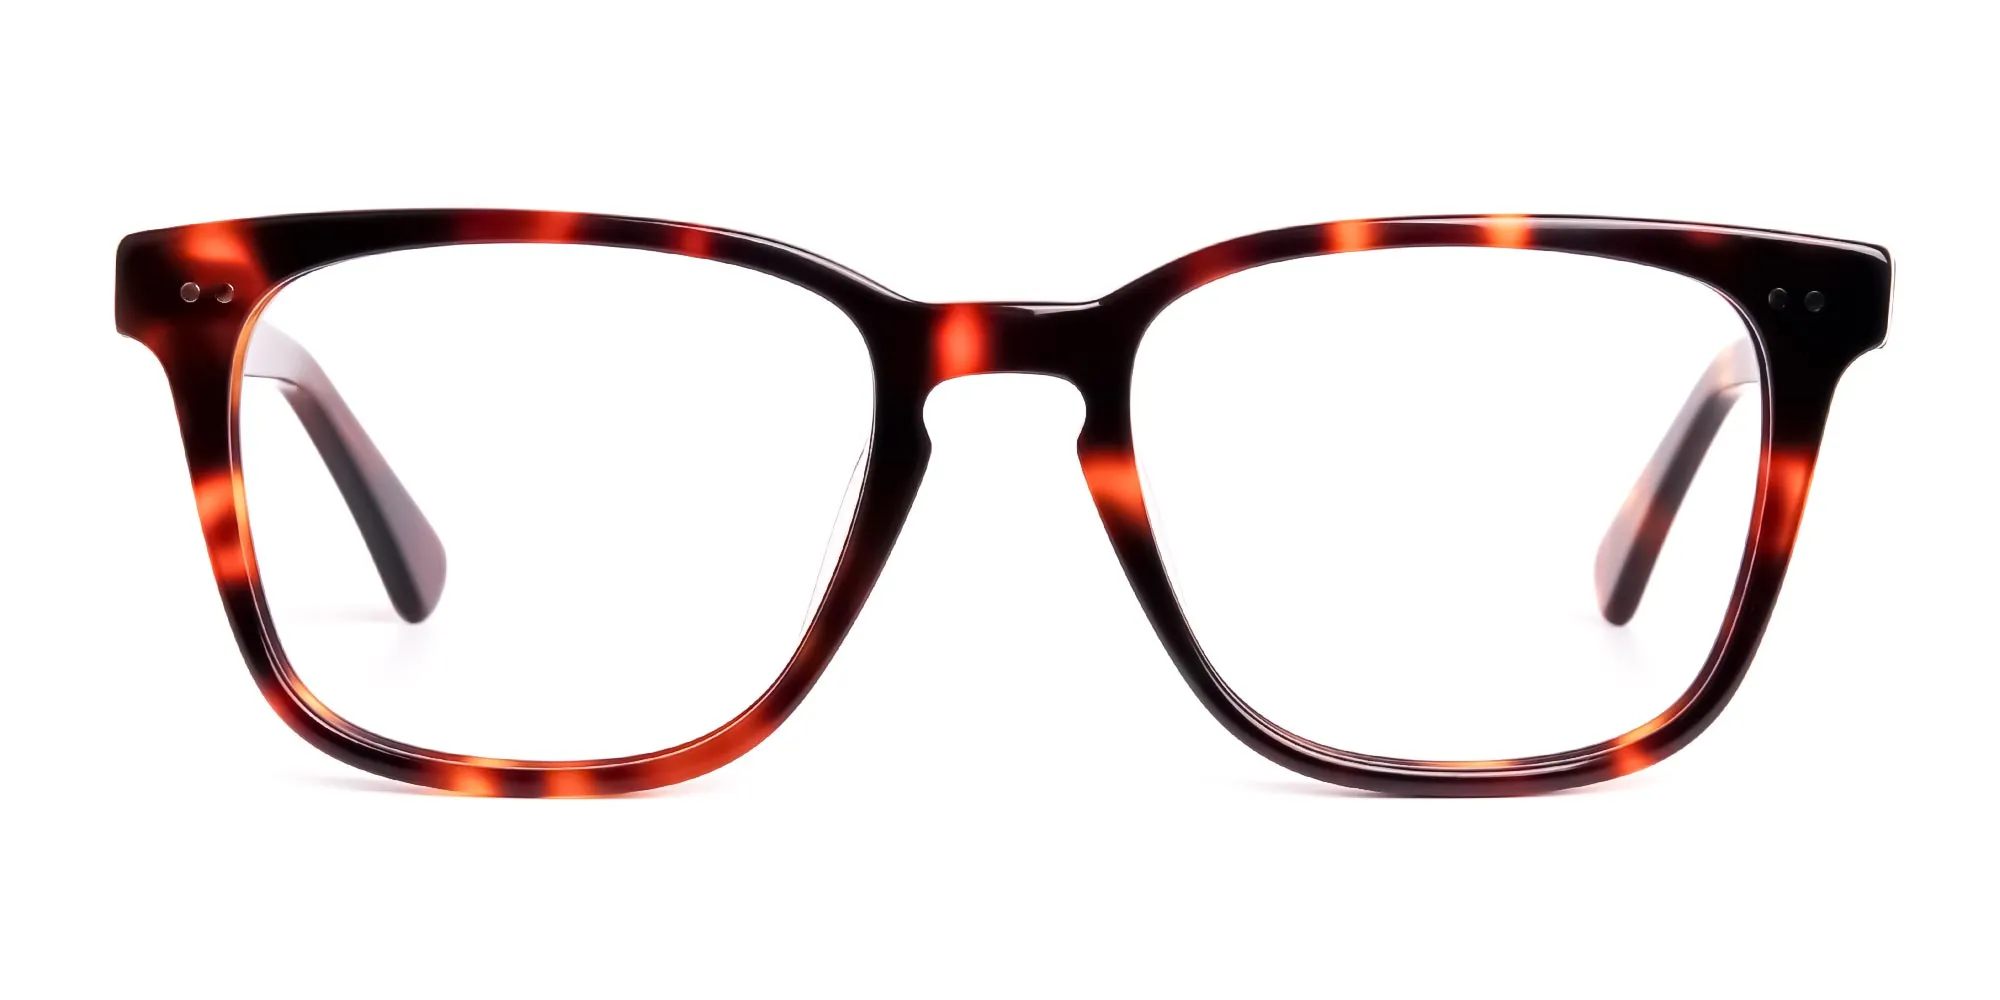 havana-and-tortoise-Shell-Wayfarer-glasses-frames-2